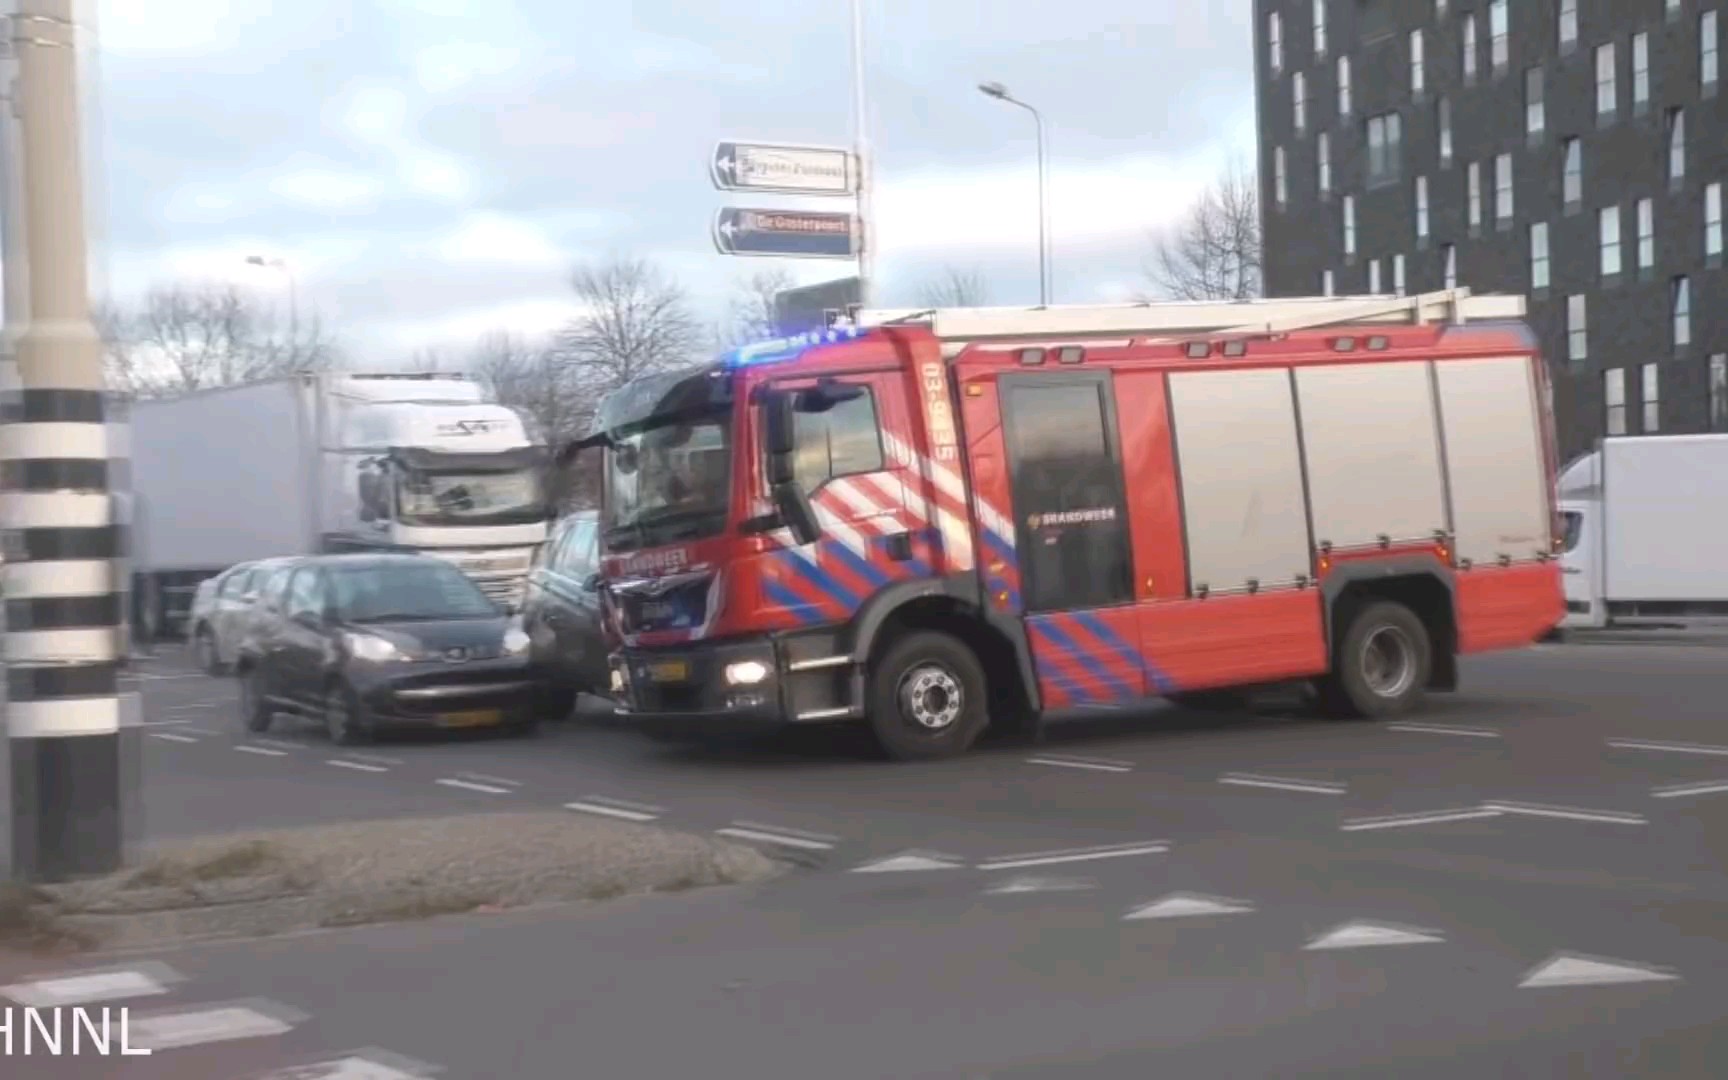 【转载】 事故,荷兰消防车出警时与社会车辆发生碰撞